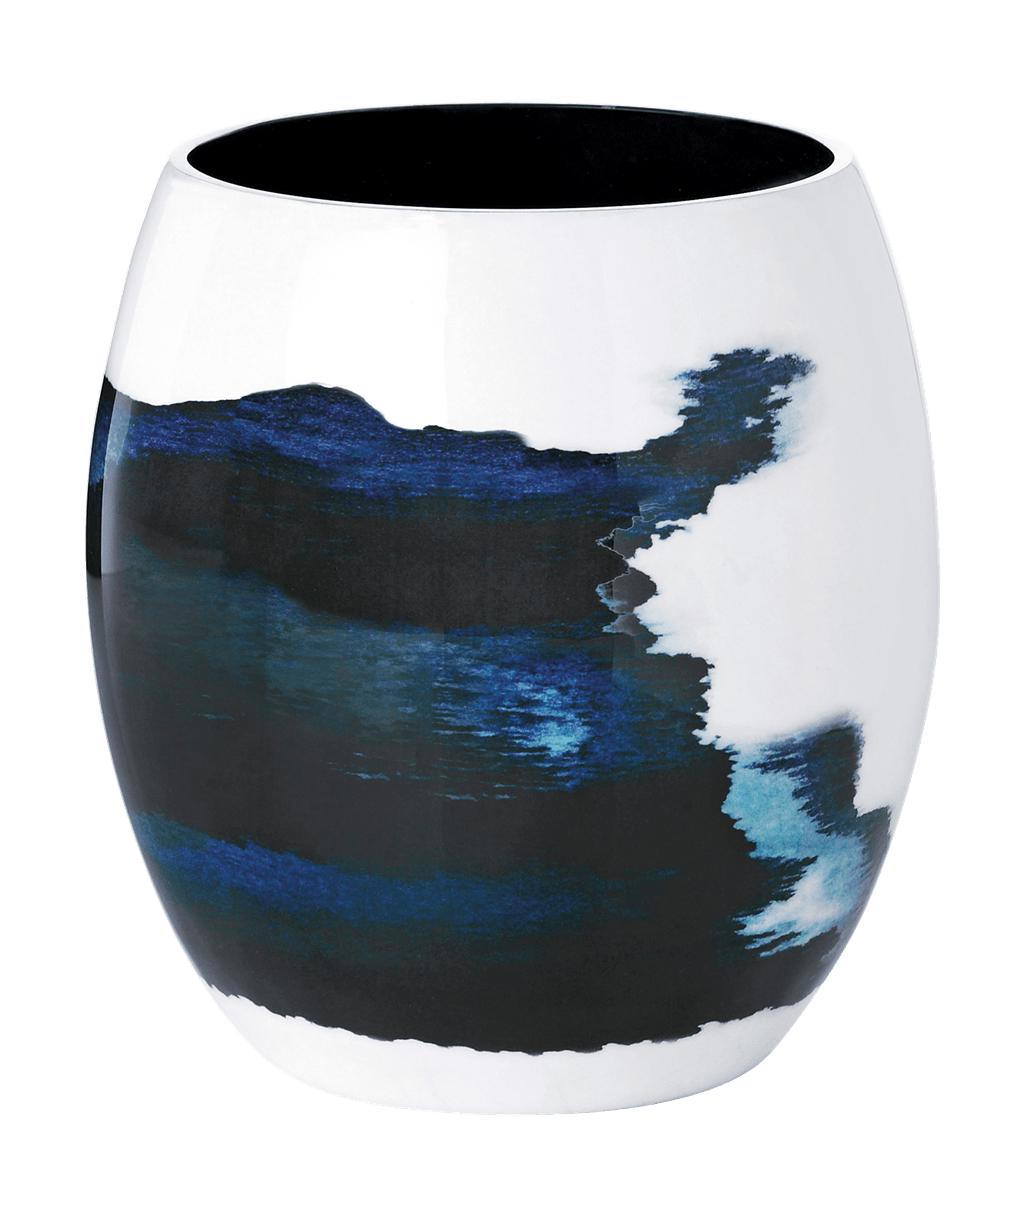 Stelton Stockholm Vase 15,7cm, Aquatic